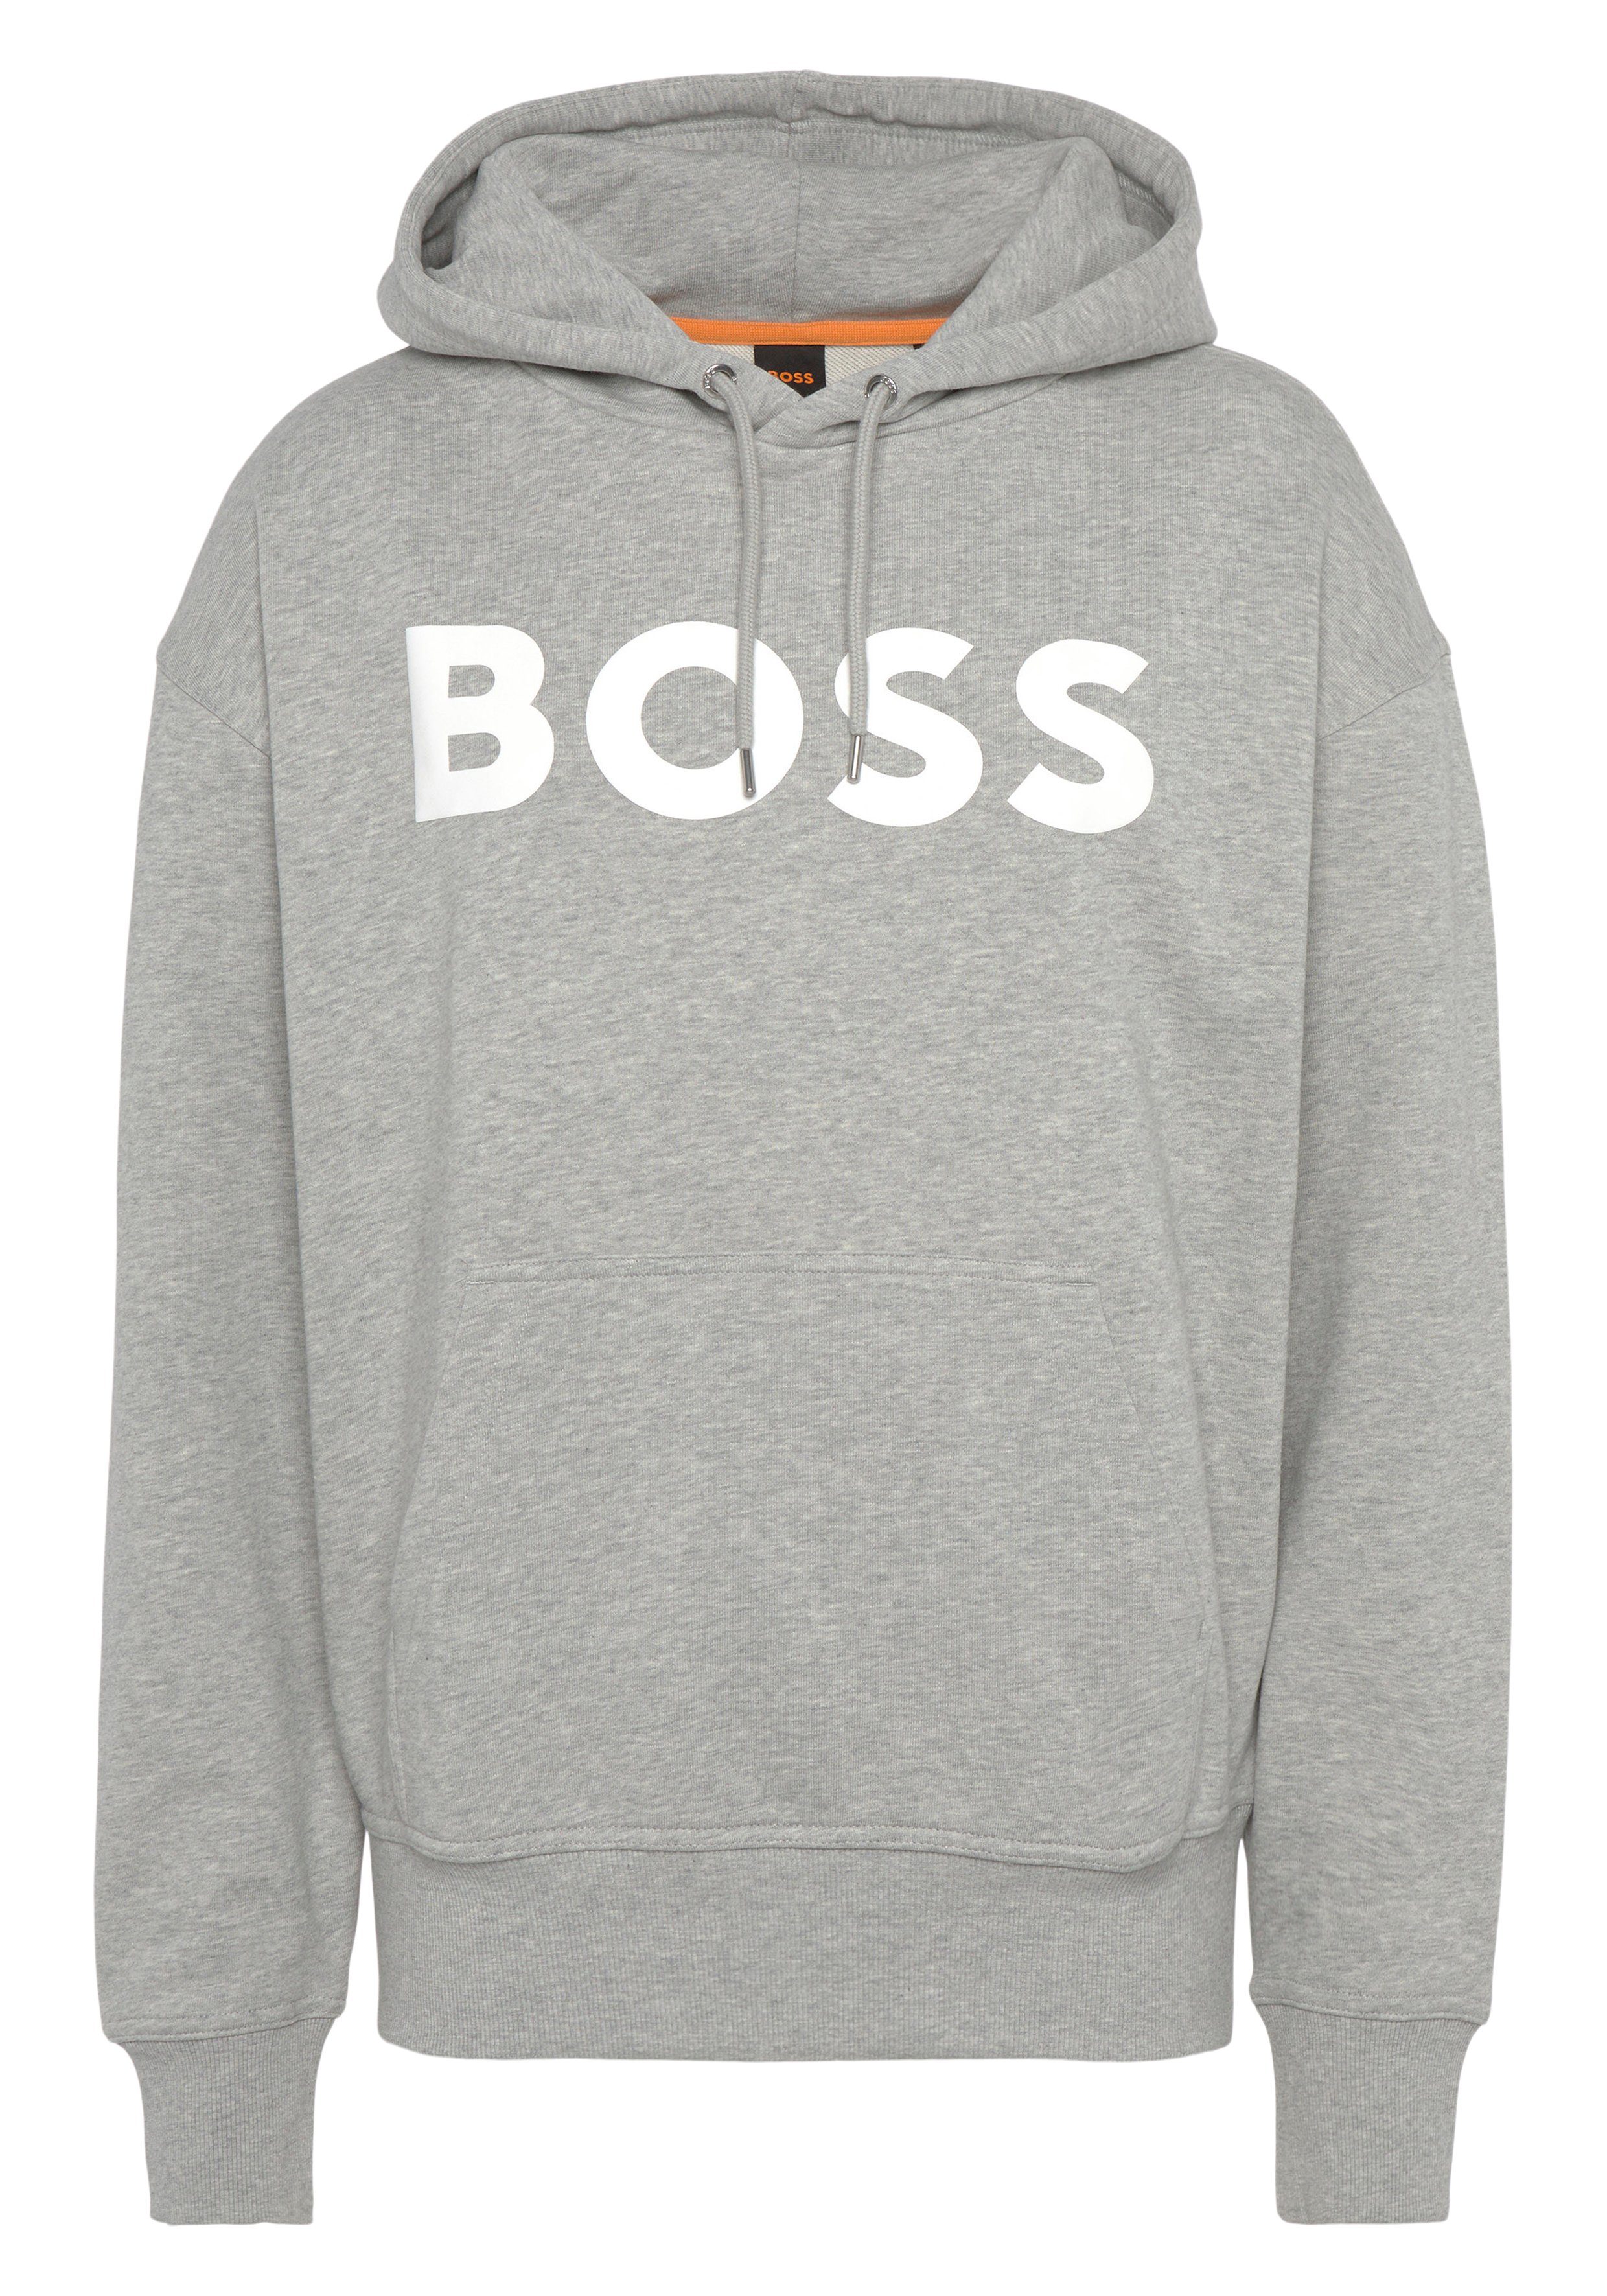 BOSS ORANGE WebasicHood Kordelzug mit Kapuze Logodruck, Sweatshirt mit weißem Bequeme